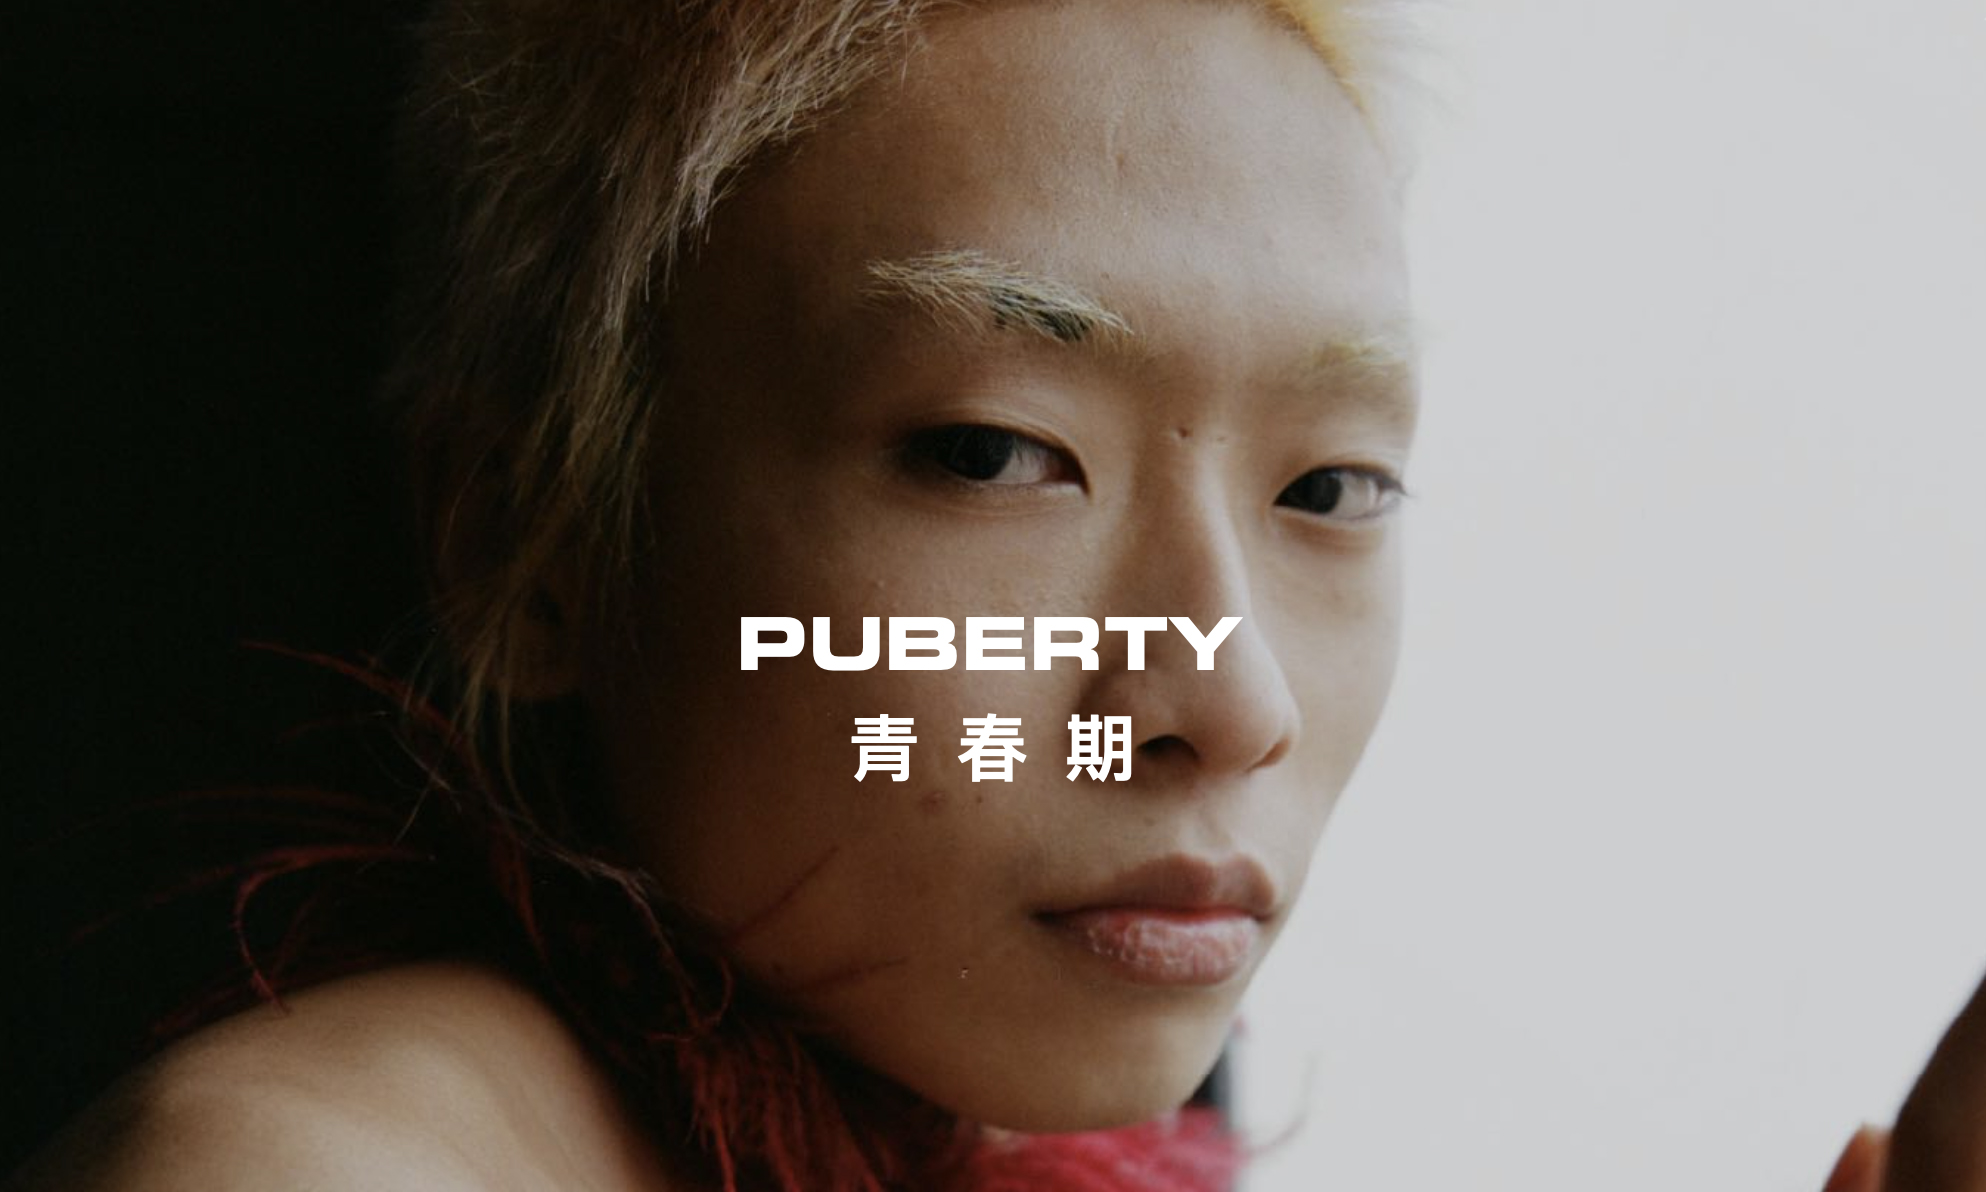 谢宇恩 YUEN HSIEH 作品《PUBERTY 青春期》正式发布